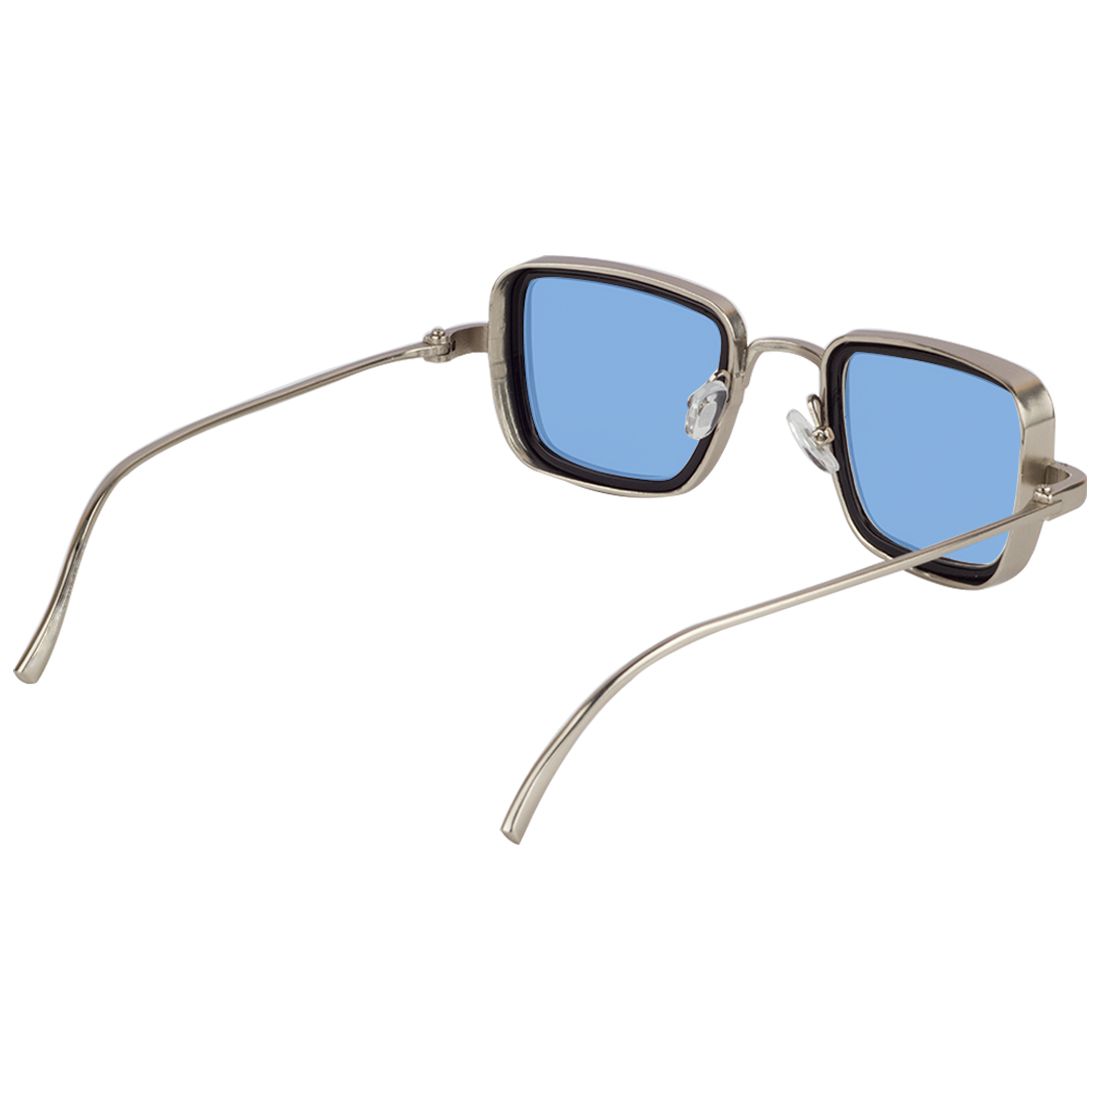 Zyaden Ocean Blue Rectangle Sunglasses Sun242 Buy Zyaden Ocean Blue Rectangle